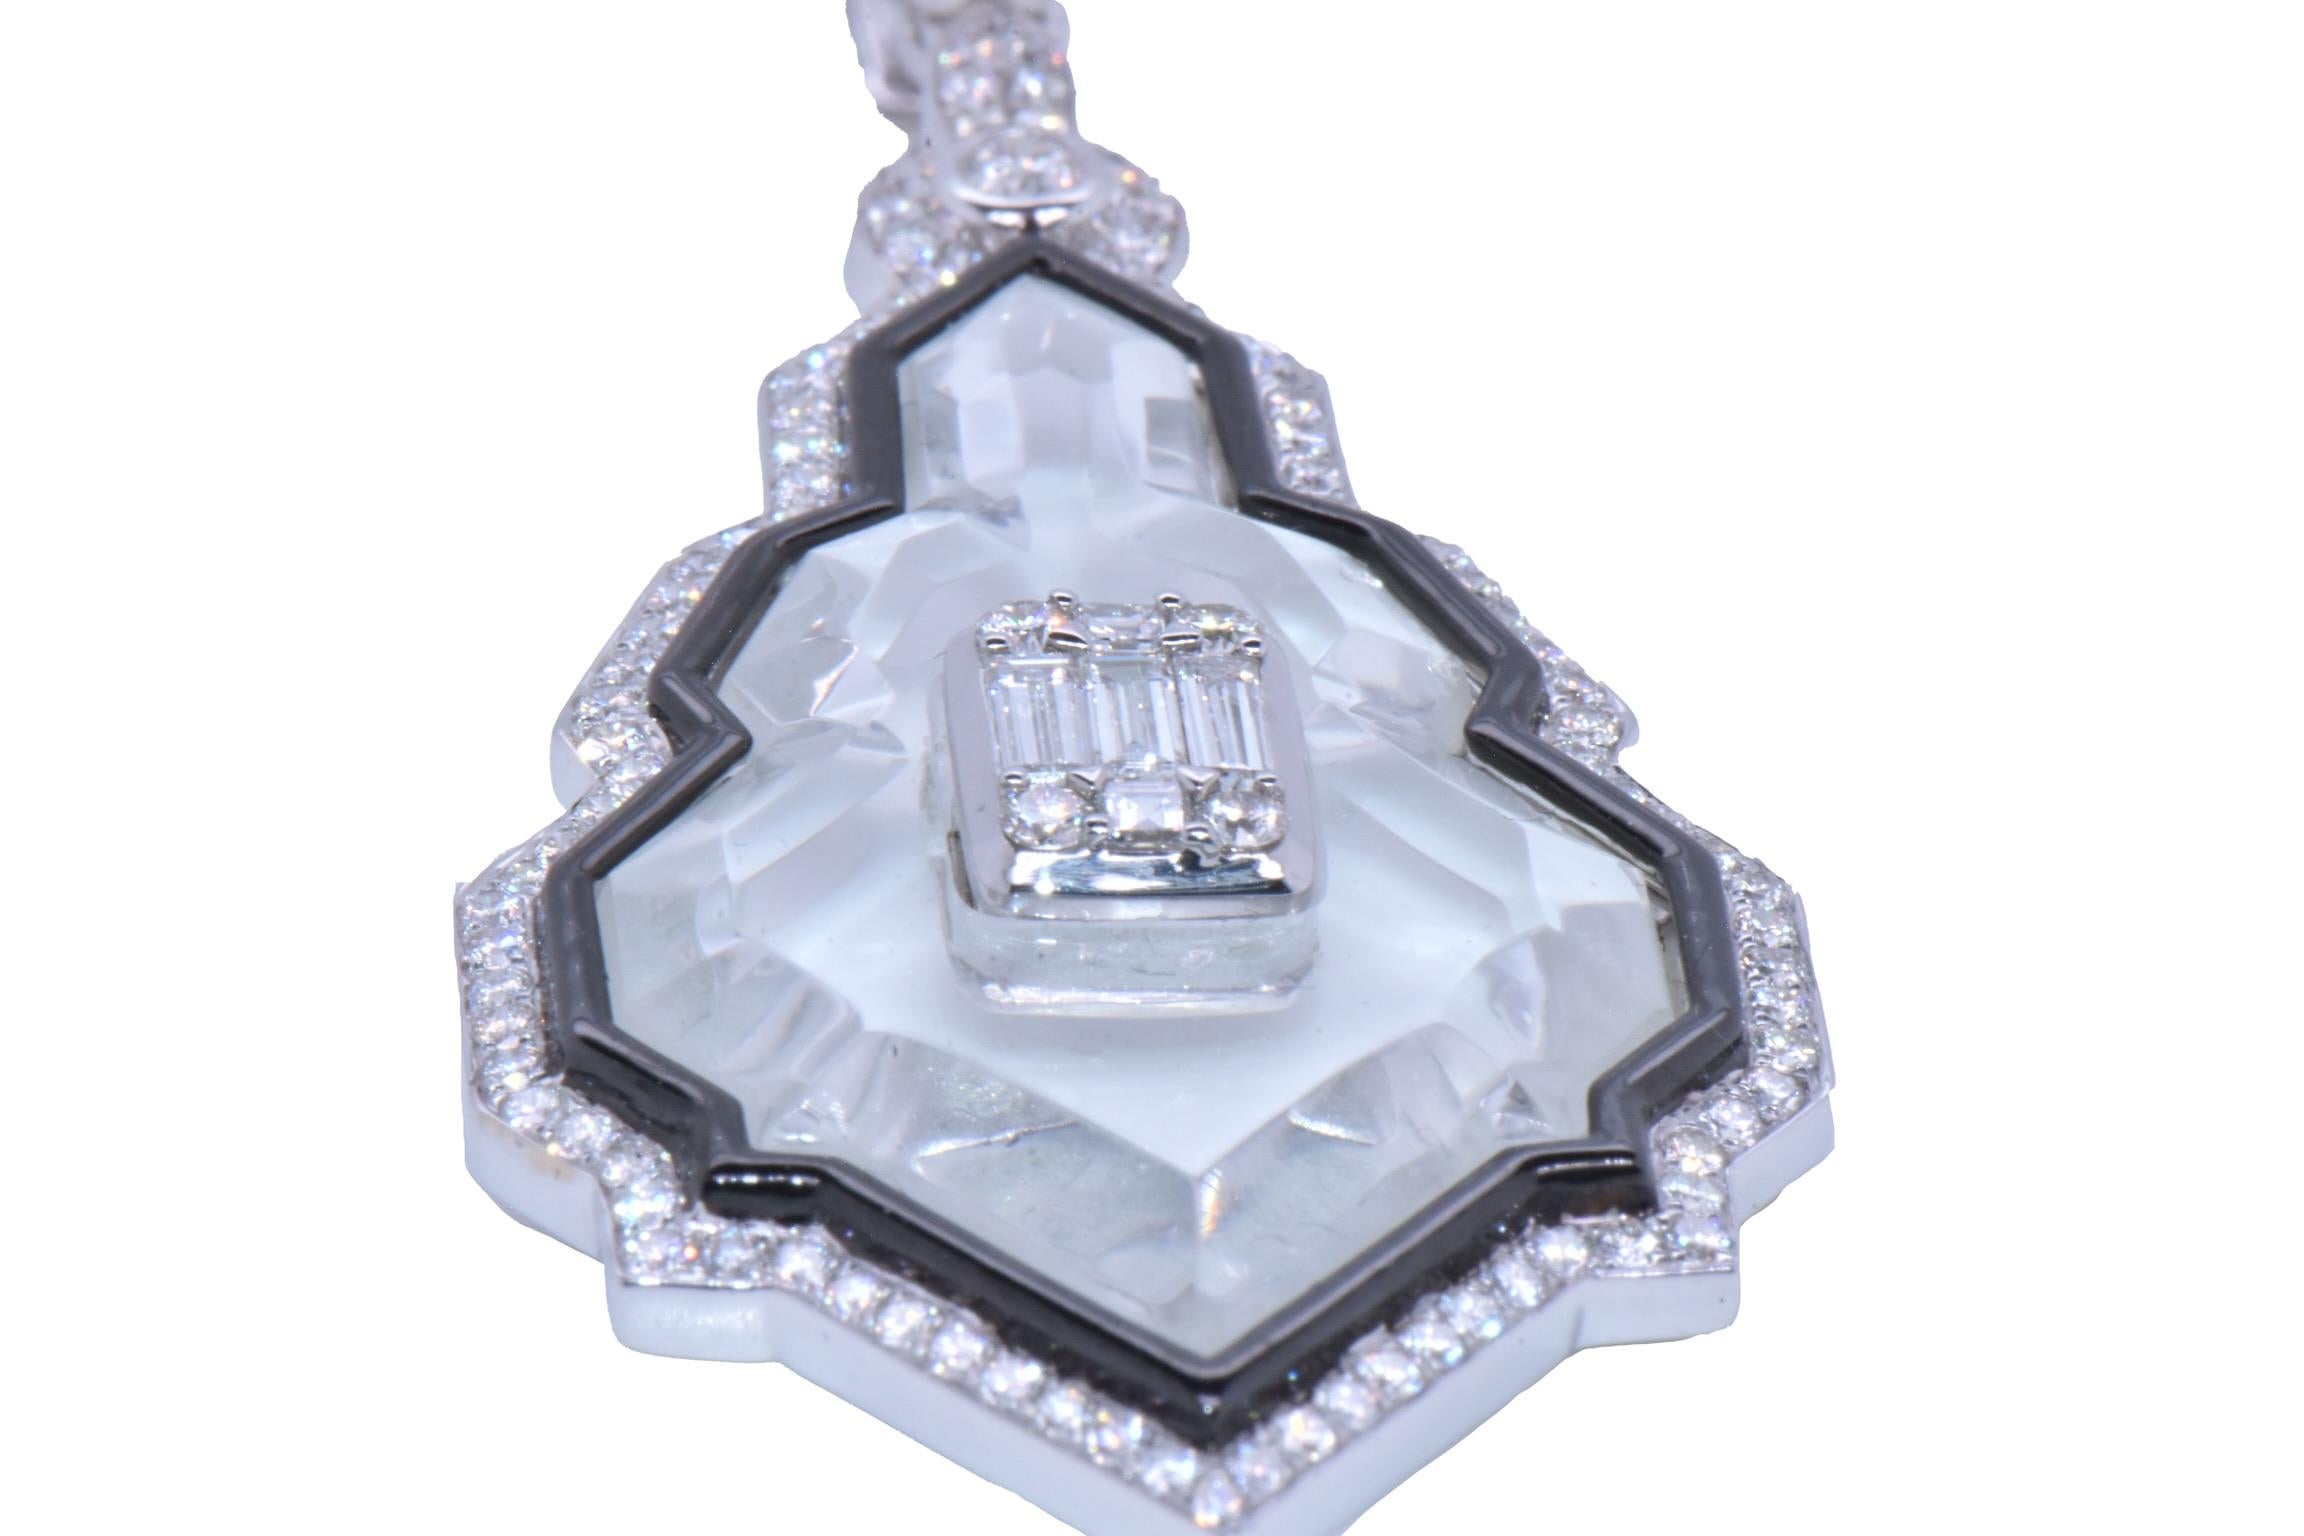 Pendentif Sunray en or blanc 18k avec cristaux et diamants

Magnifique pendentif unique de style Art-Déco, avec bordure de diamants et sertissage central de diamants baguettes sur un cristal Sunray. 

Poids total en carats du cristal : 2,73 carats